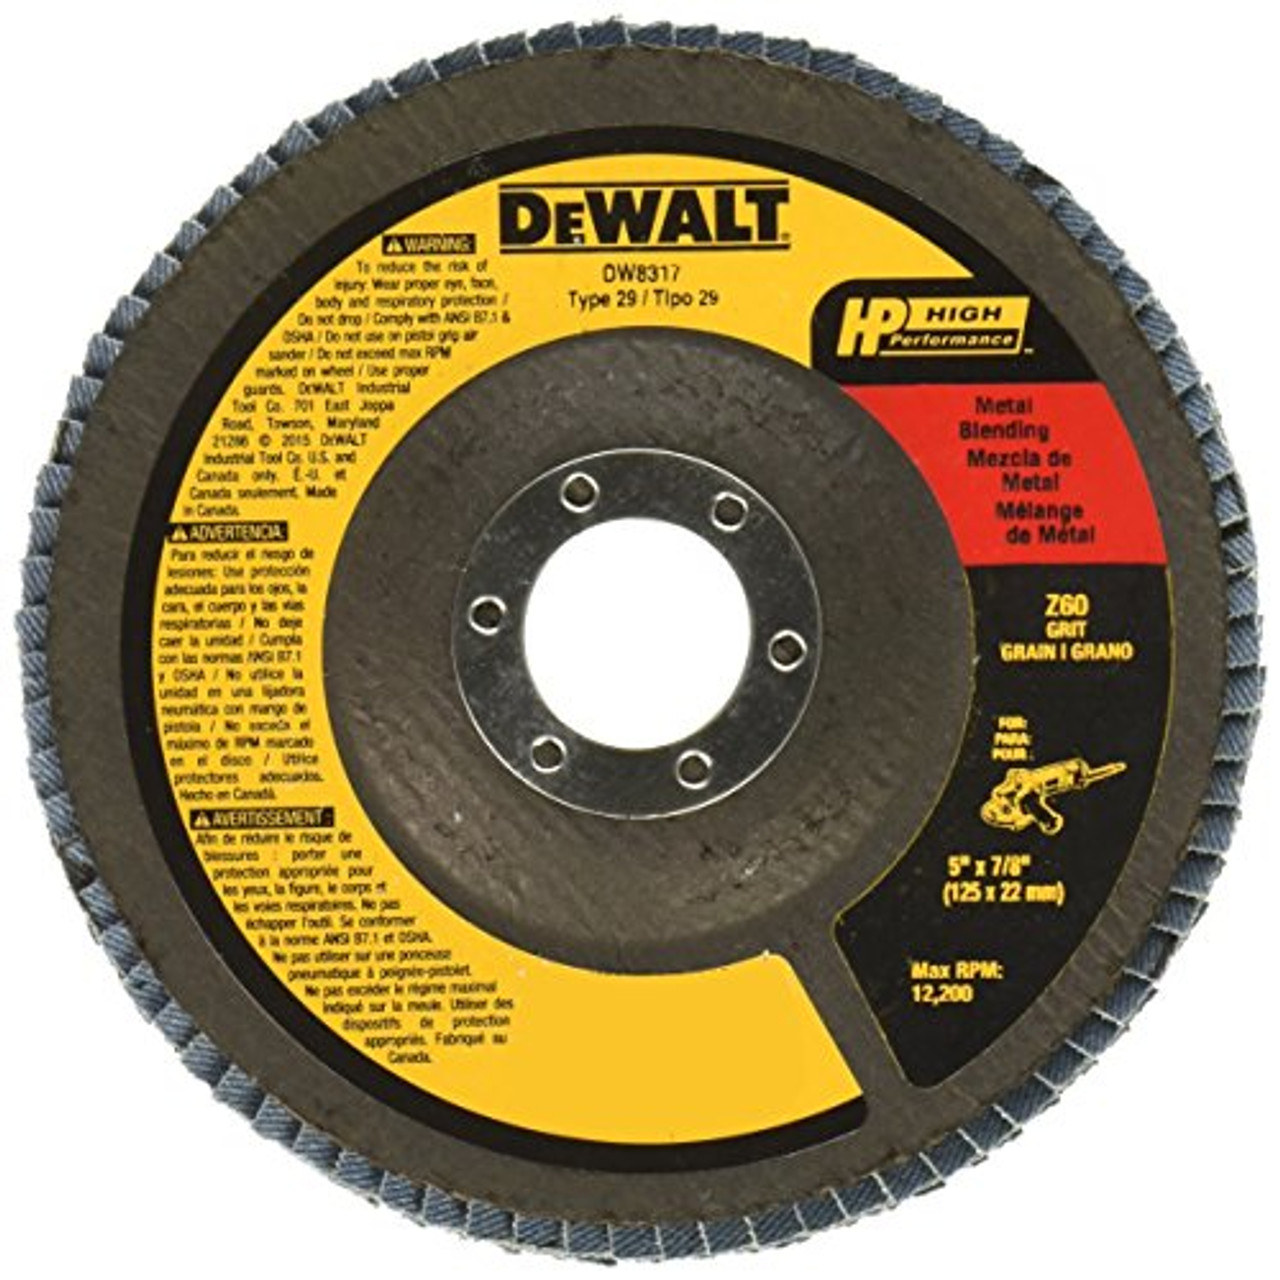 DEWALT DW8317 5-Inch by 7/8-Inch 60 Grit Zirconia Angle Grinder Flap Disc